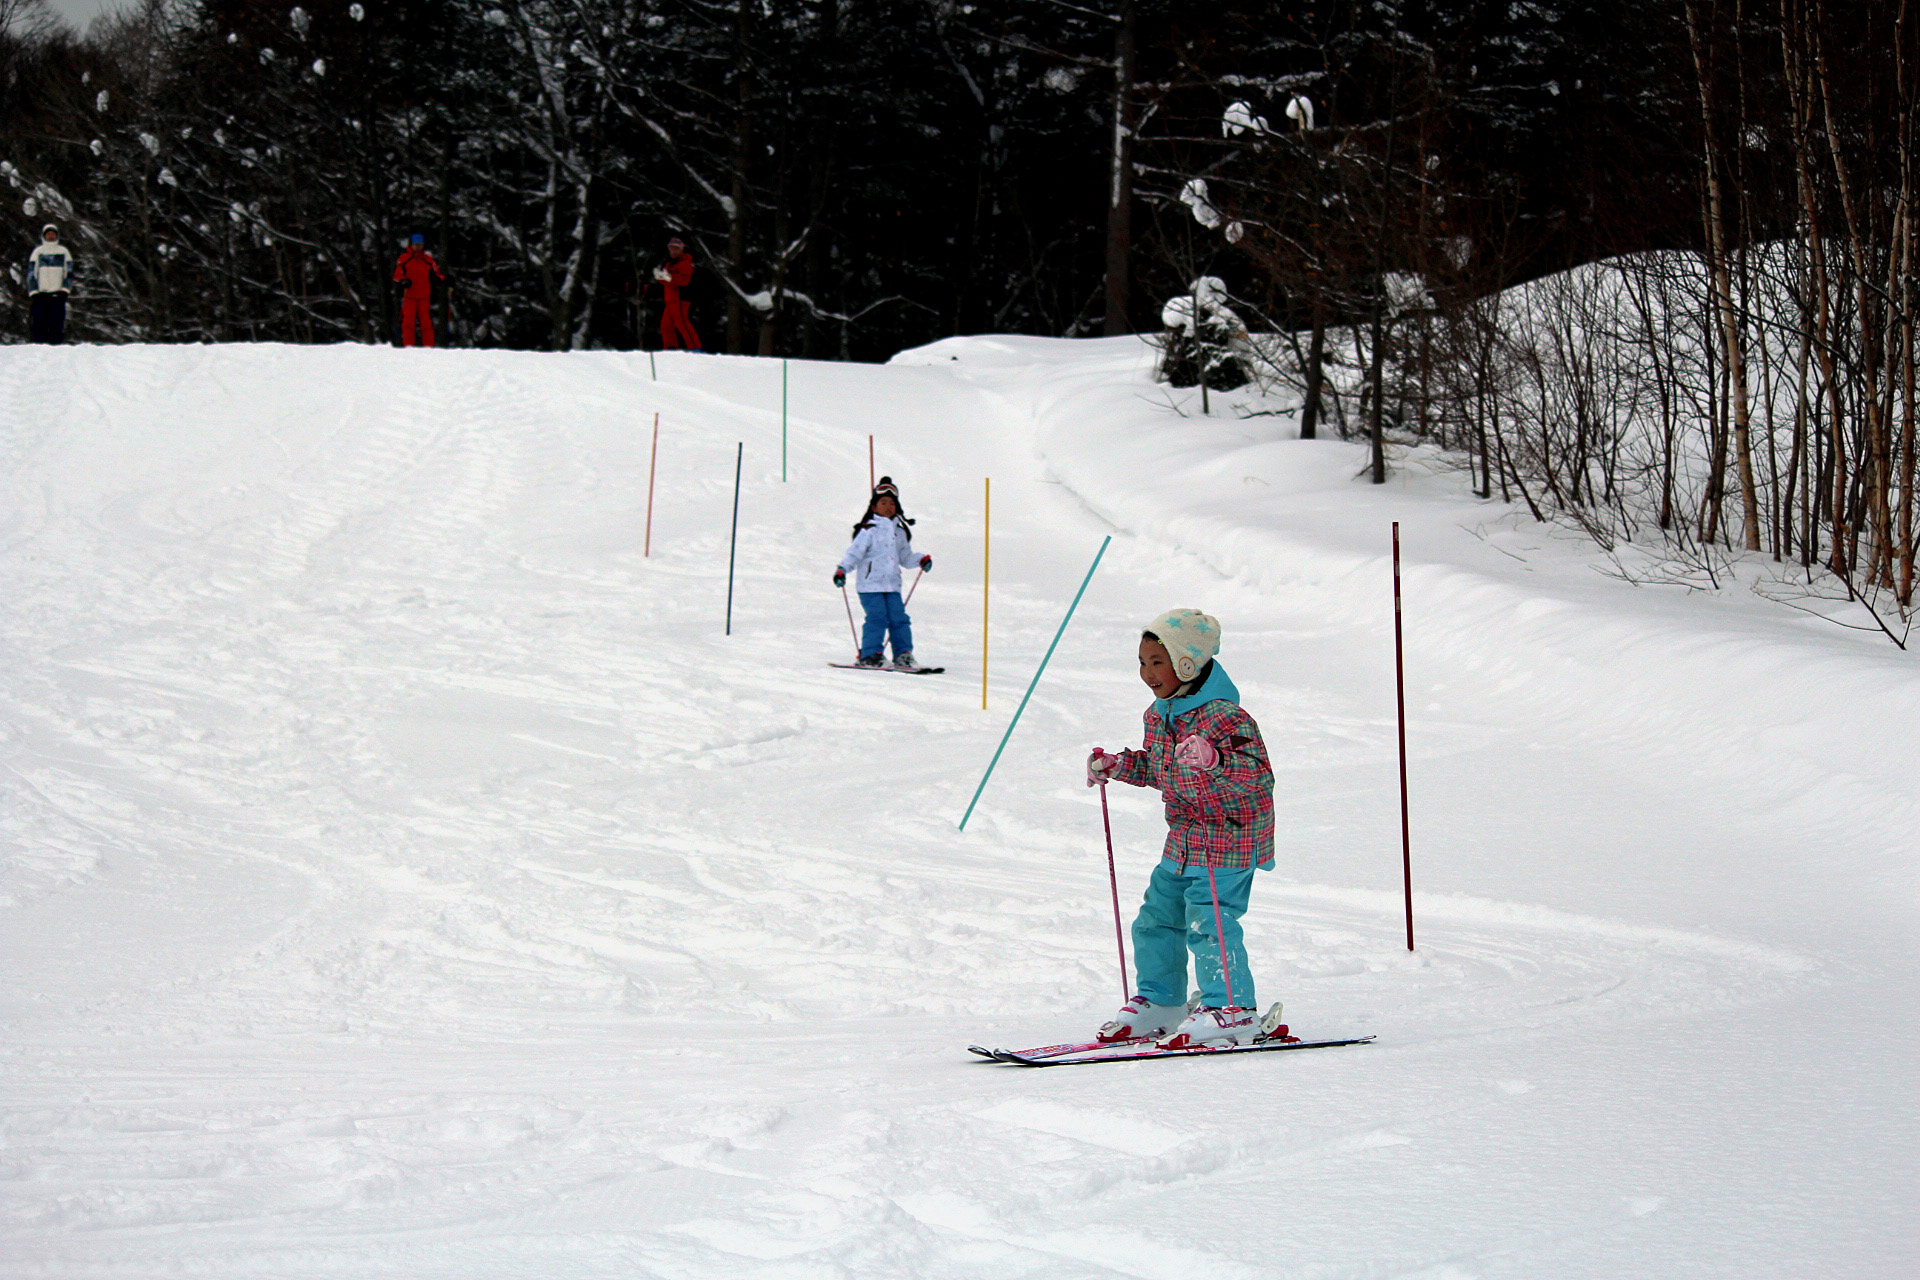 　１月１６、１７日の２日間、小学校裏山のスキー広場で小学１・２年生を対象にスキー教室（教育委員会主催）が開かれました。
　講師はスキー連盟の３名で、参加した１・２年生６人は、歩いて頂上まで登り、止まり方やボーデンなどを習いました。。２日目には、ポールの間を転ぶことなくターンできるようになっている子どももおり、スキーに慣れ、笑顔で滑っていました。
　小学１年生の女子児童は「スキーが滑れるようになって嬉しいし、とても楽しいです」と話してくれました。